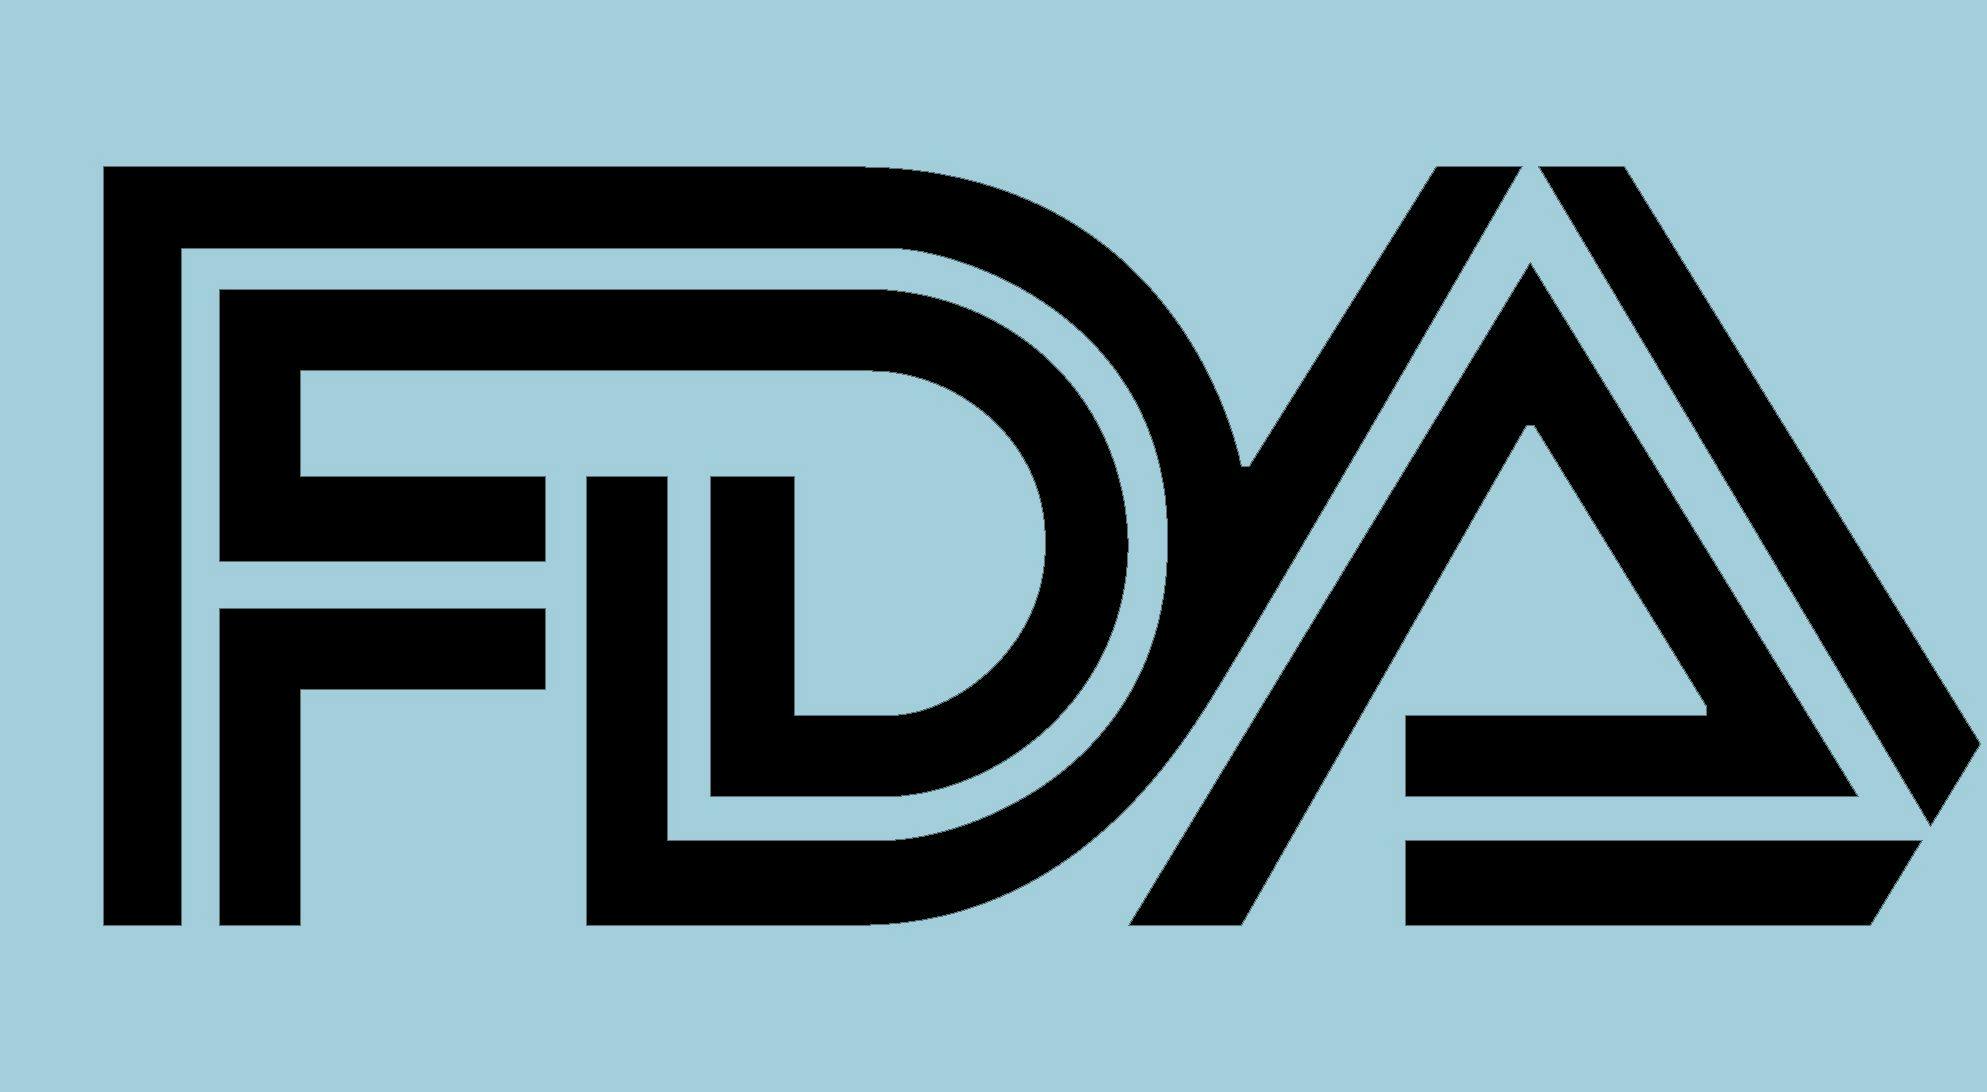 FDA on blue background